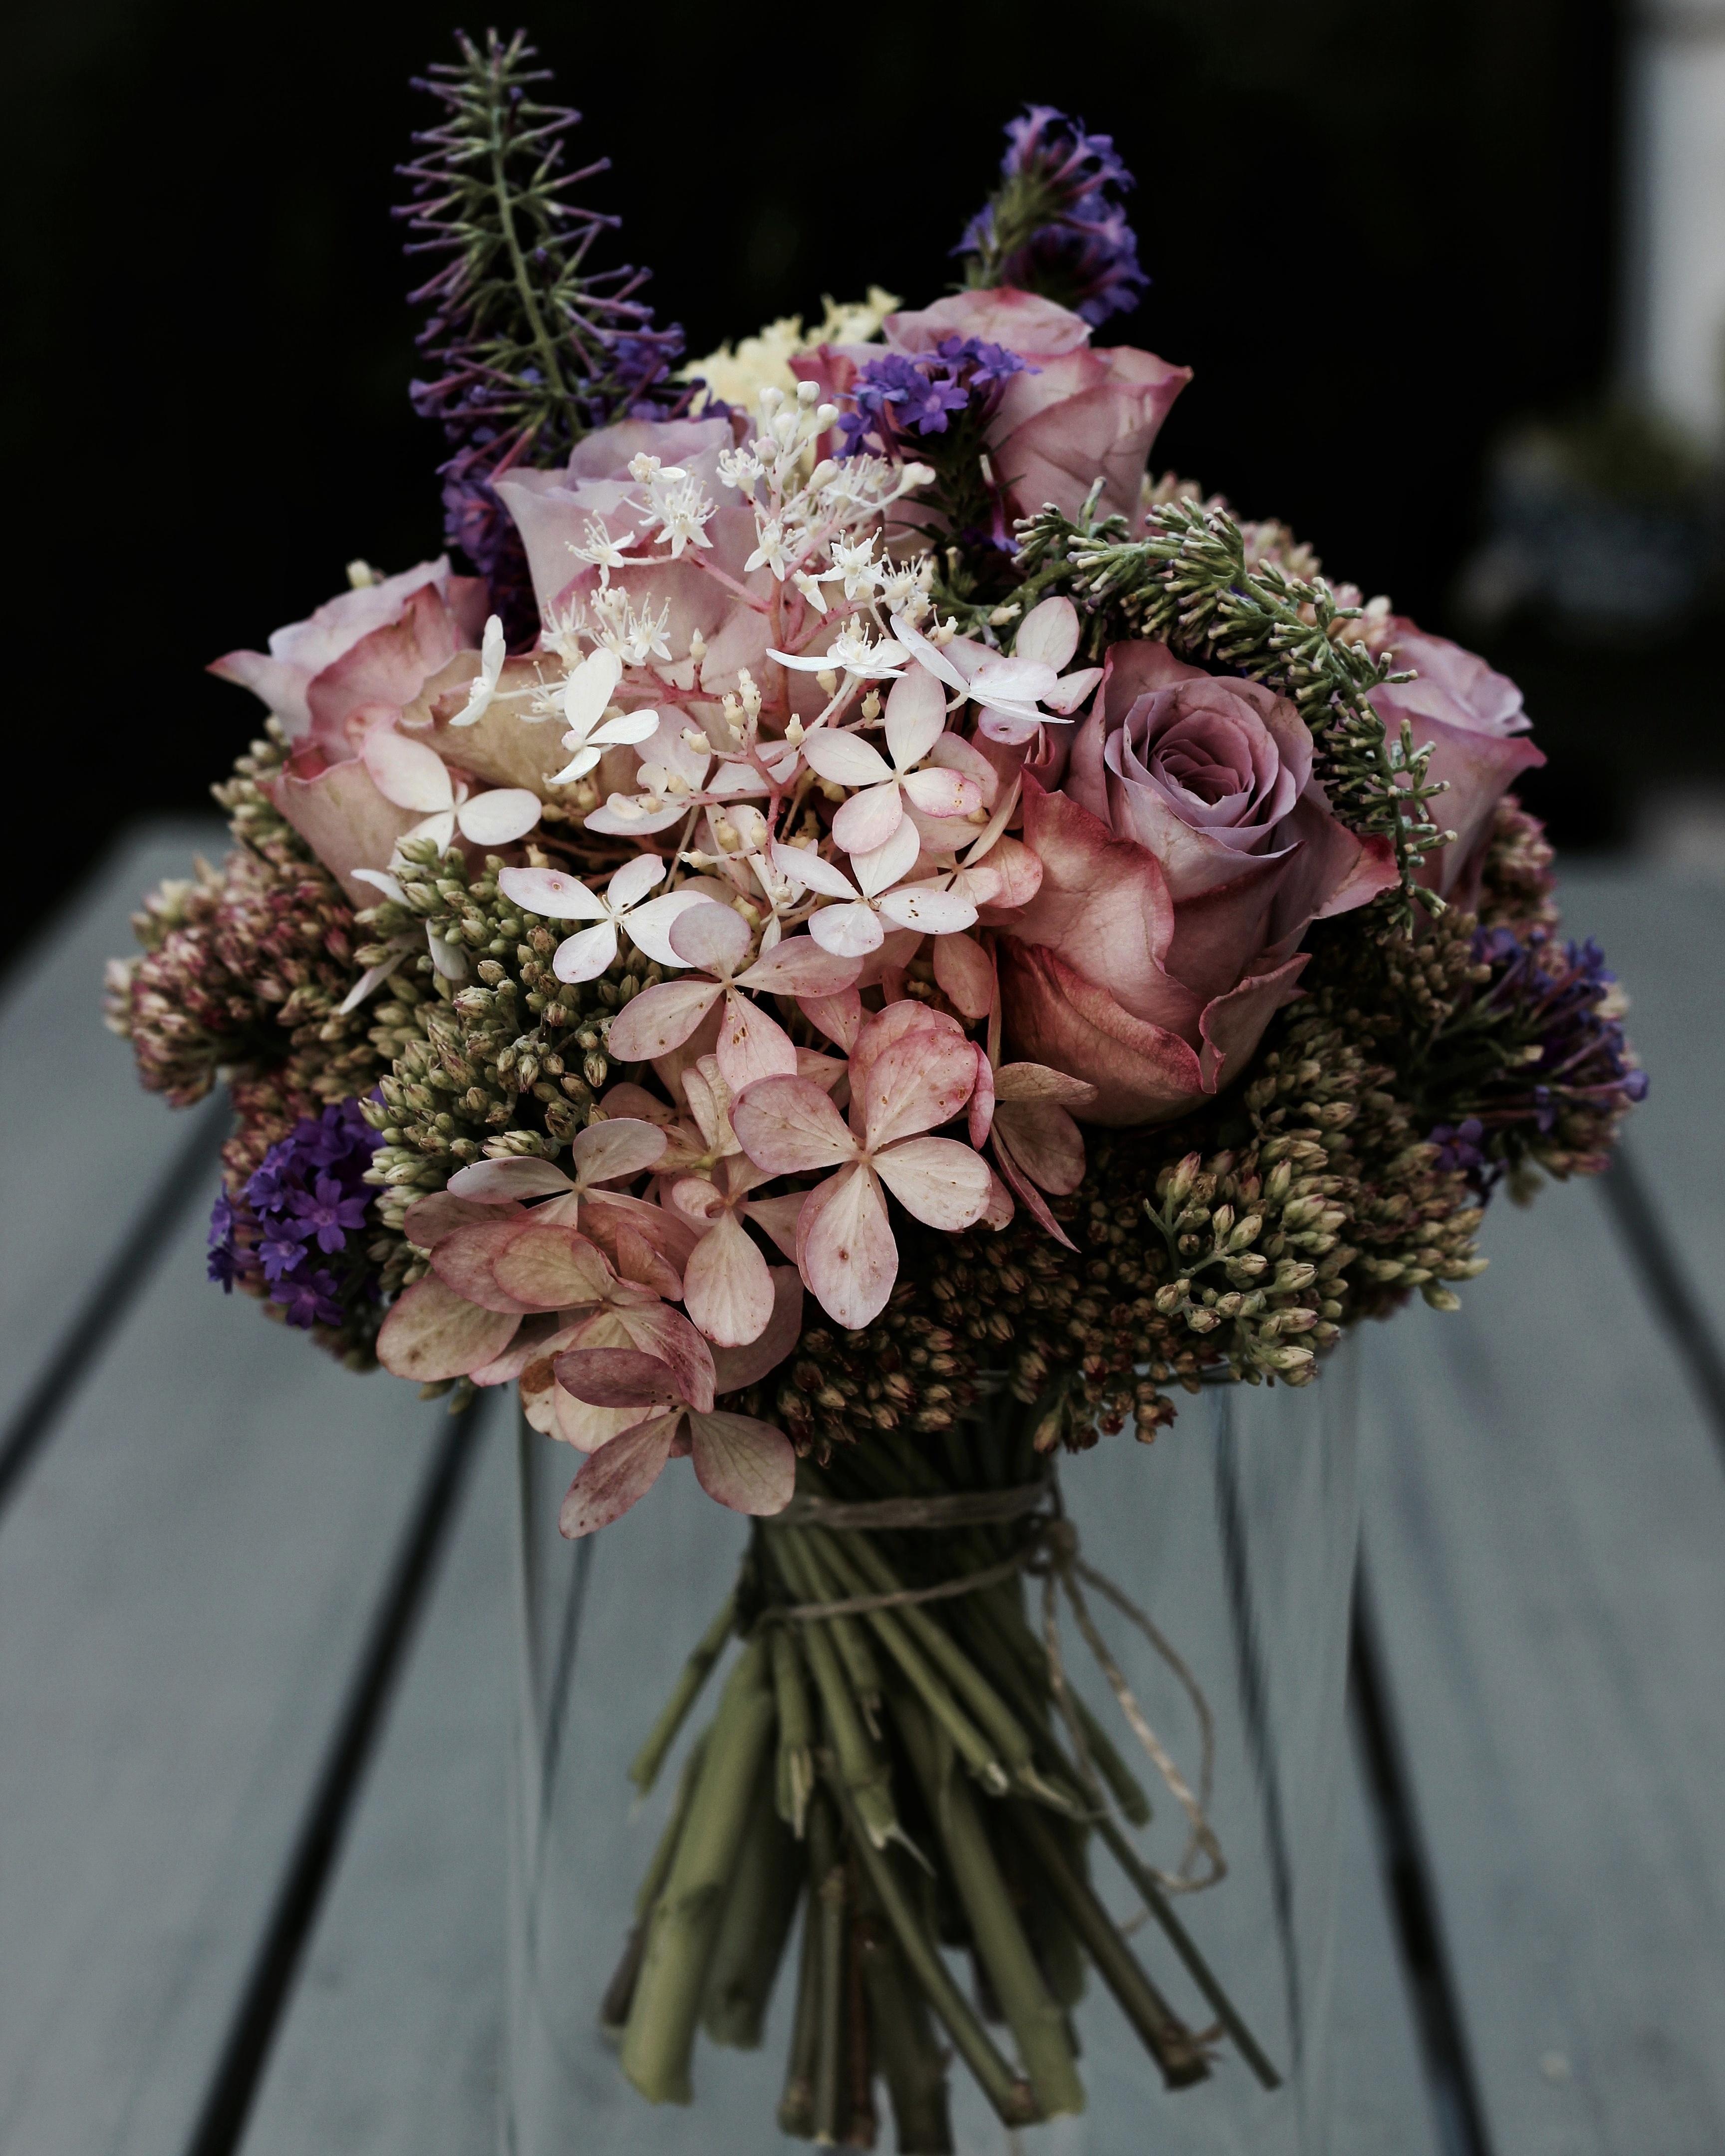 Eine kleine Brautstrauß Inspiration 💐 #selfmade #bridal #bridalbouquet #diy #weddingflowers #wedding #flowers 